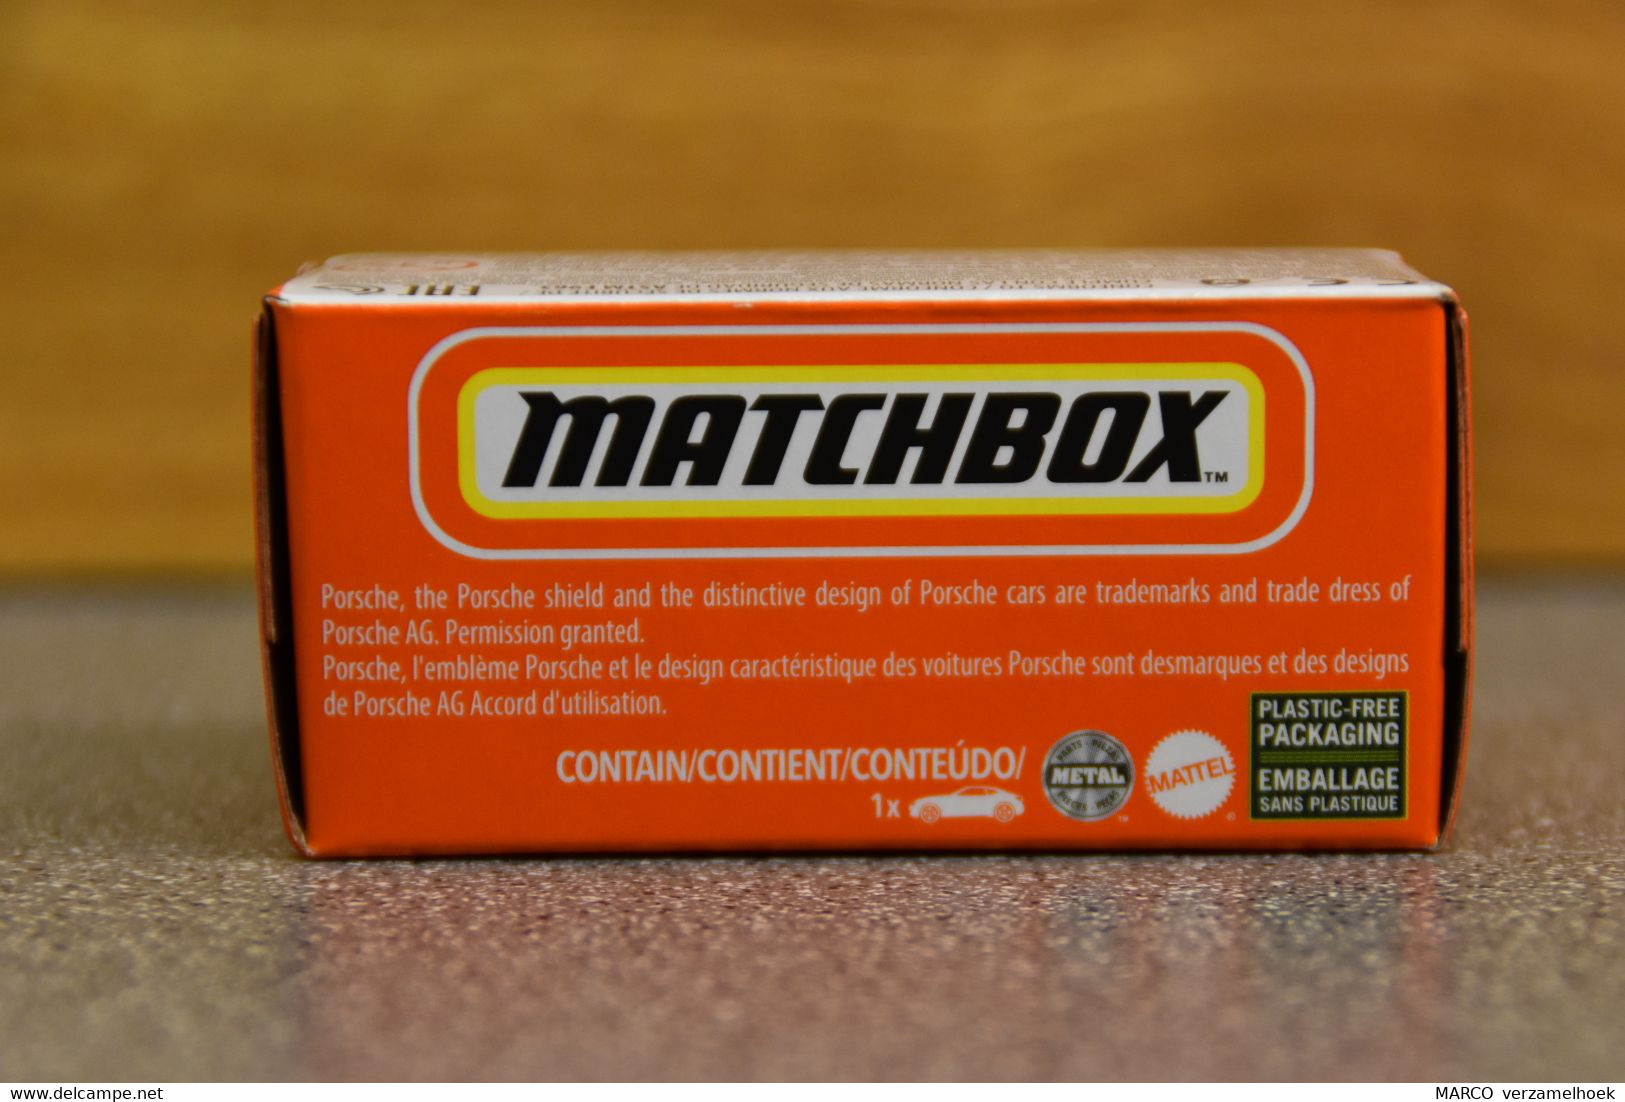 Mattel - Matchbox 27/100 Porsche 911 Carrera Cabriolet - Matchbox (Mattel)